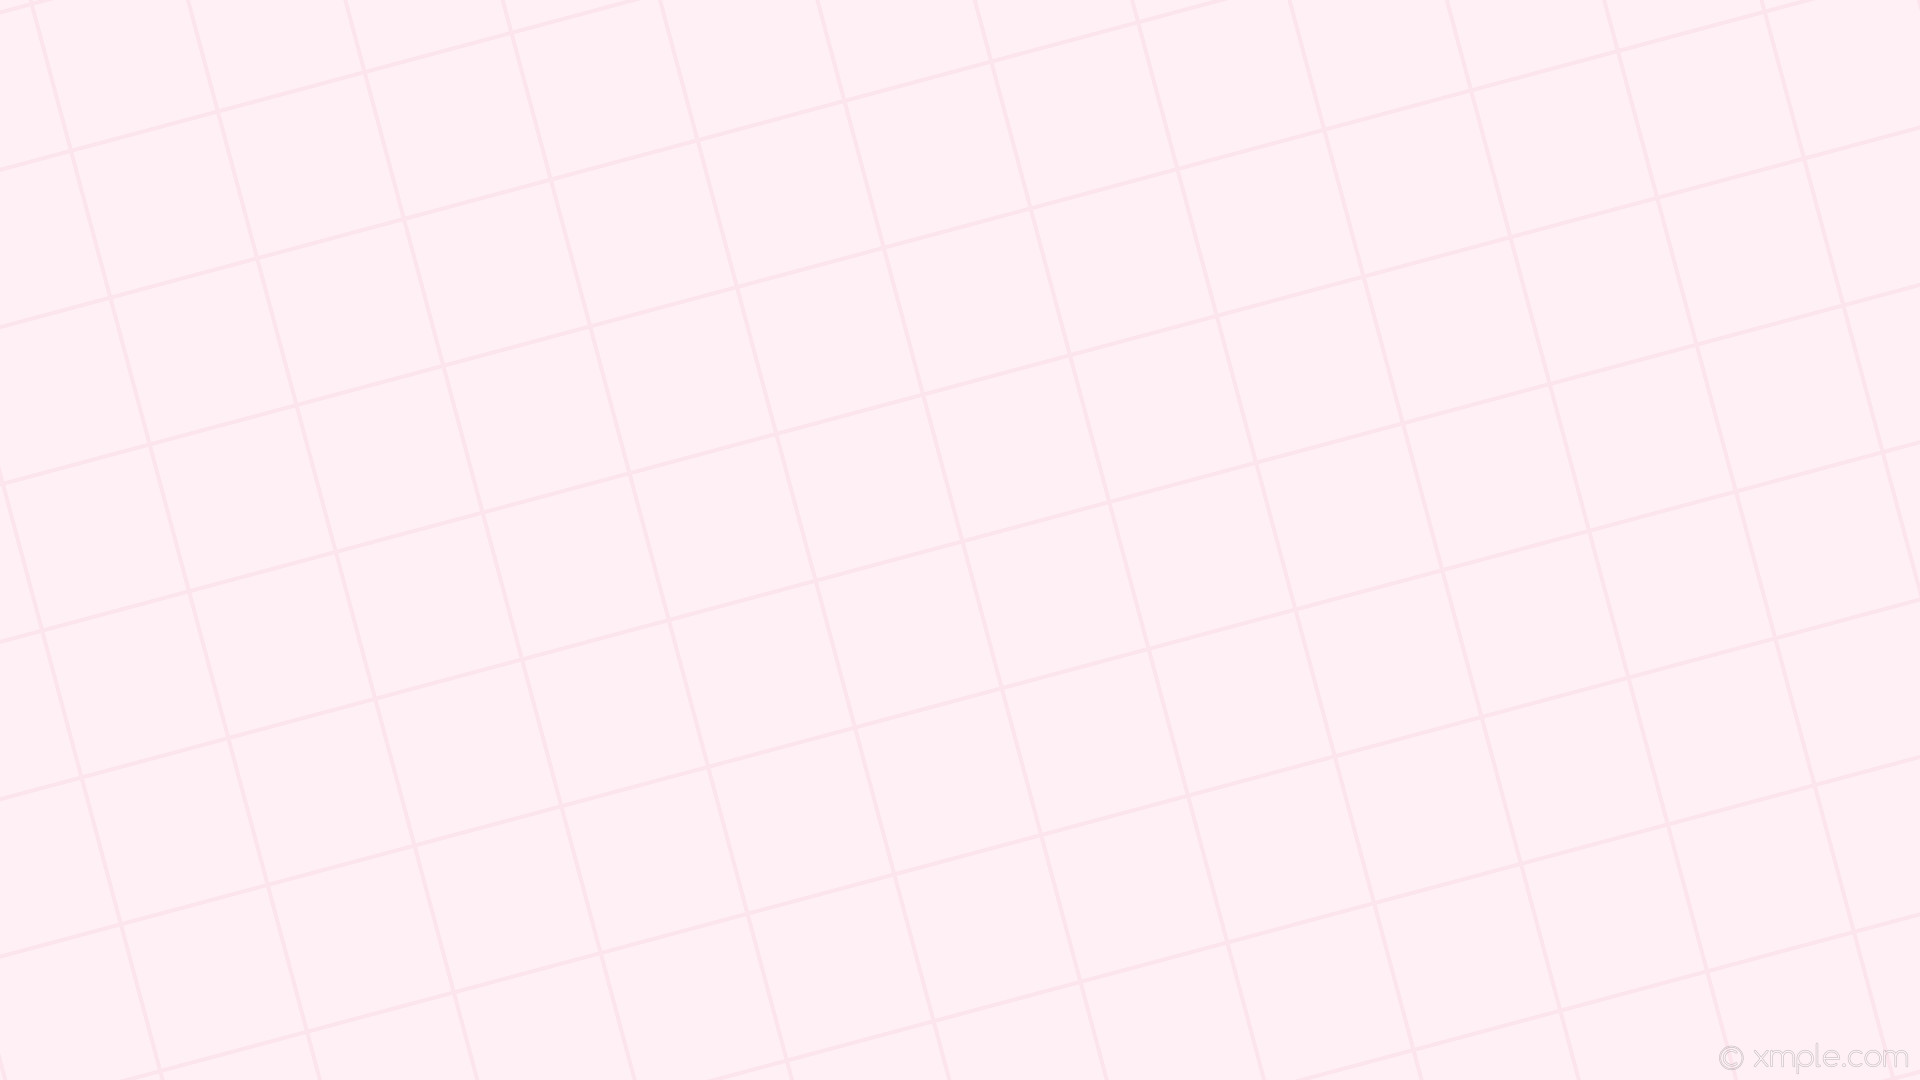 1920x1080 wallpaper graph paper pink white grid lavender blush light pink #fff0f5  #fbe0ea 15Â°